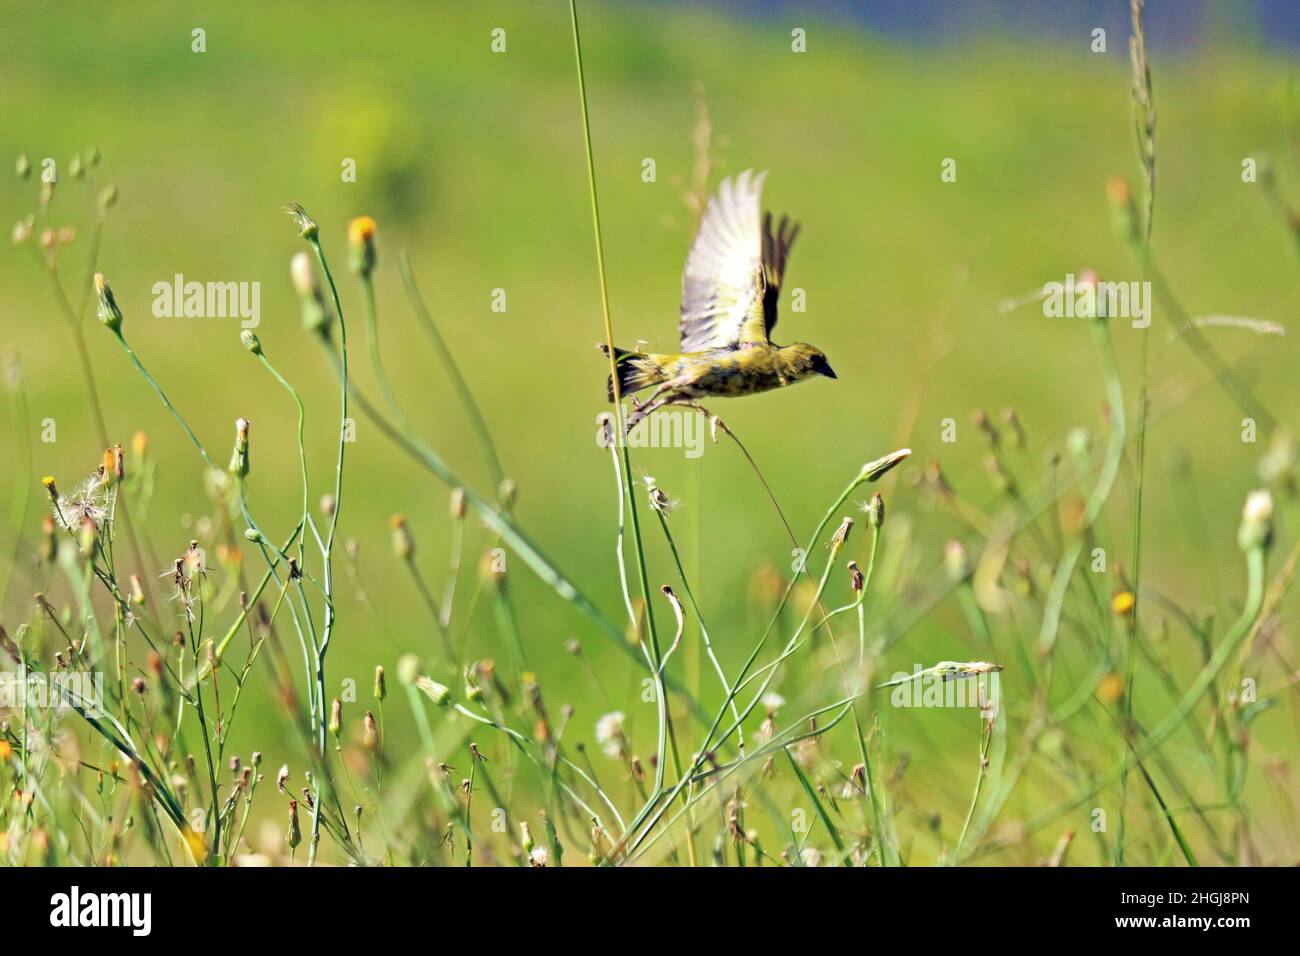 Uccello che prende il volo, in mezzo al sottobosco di erbe fiorite. Un'immagine di motivazione. Foto Stock